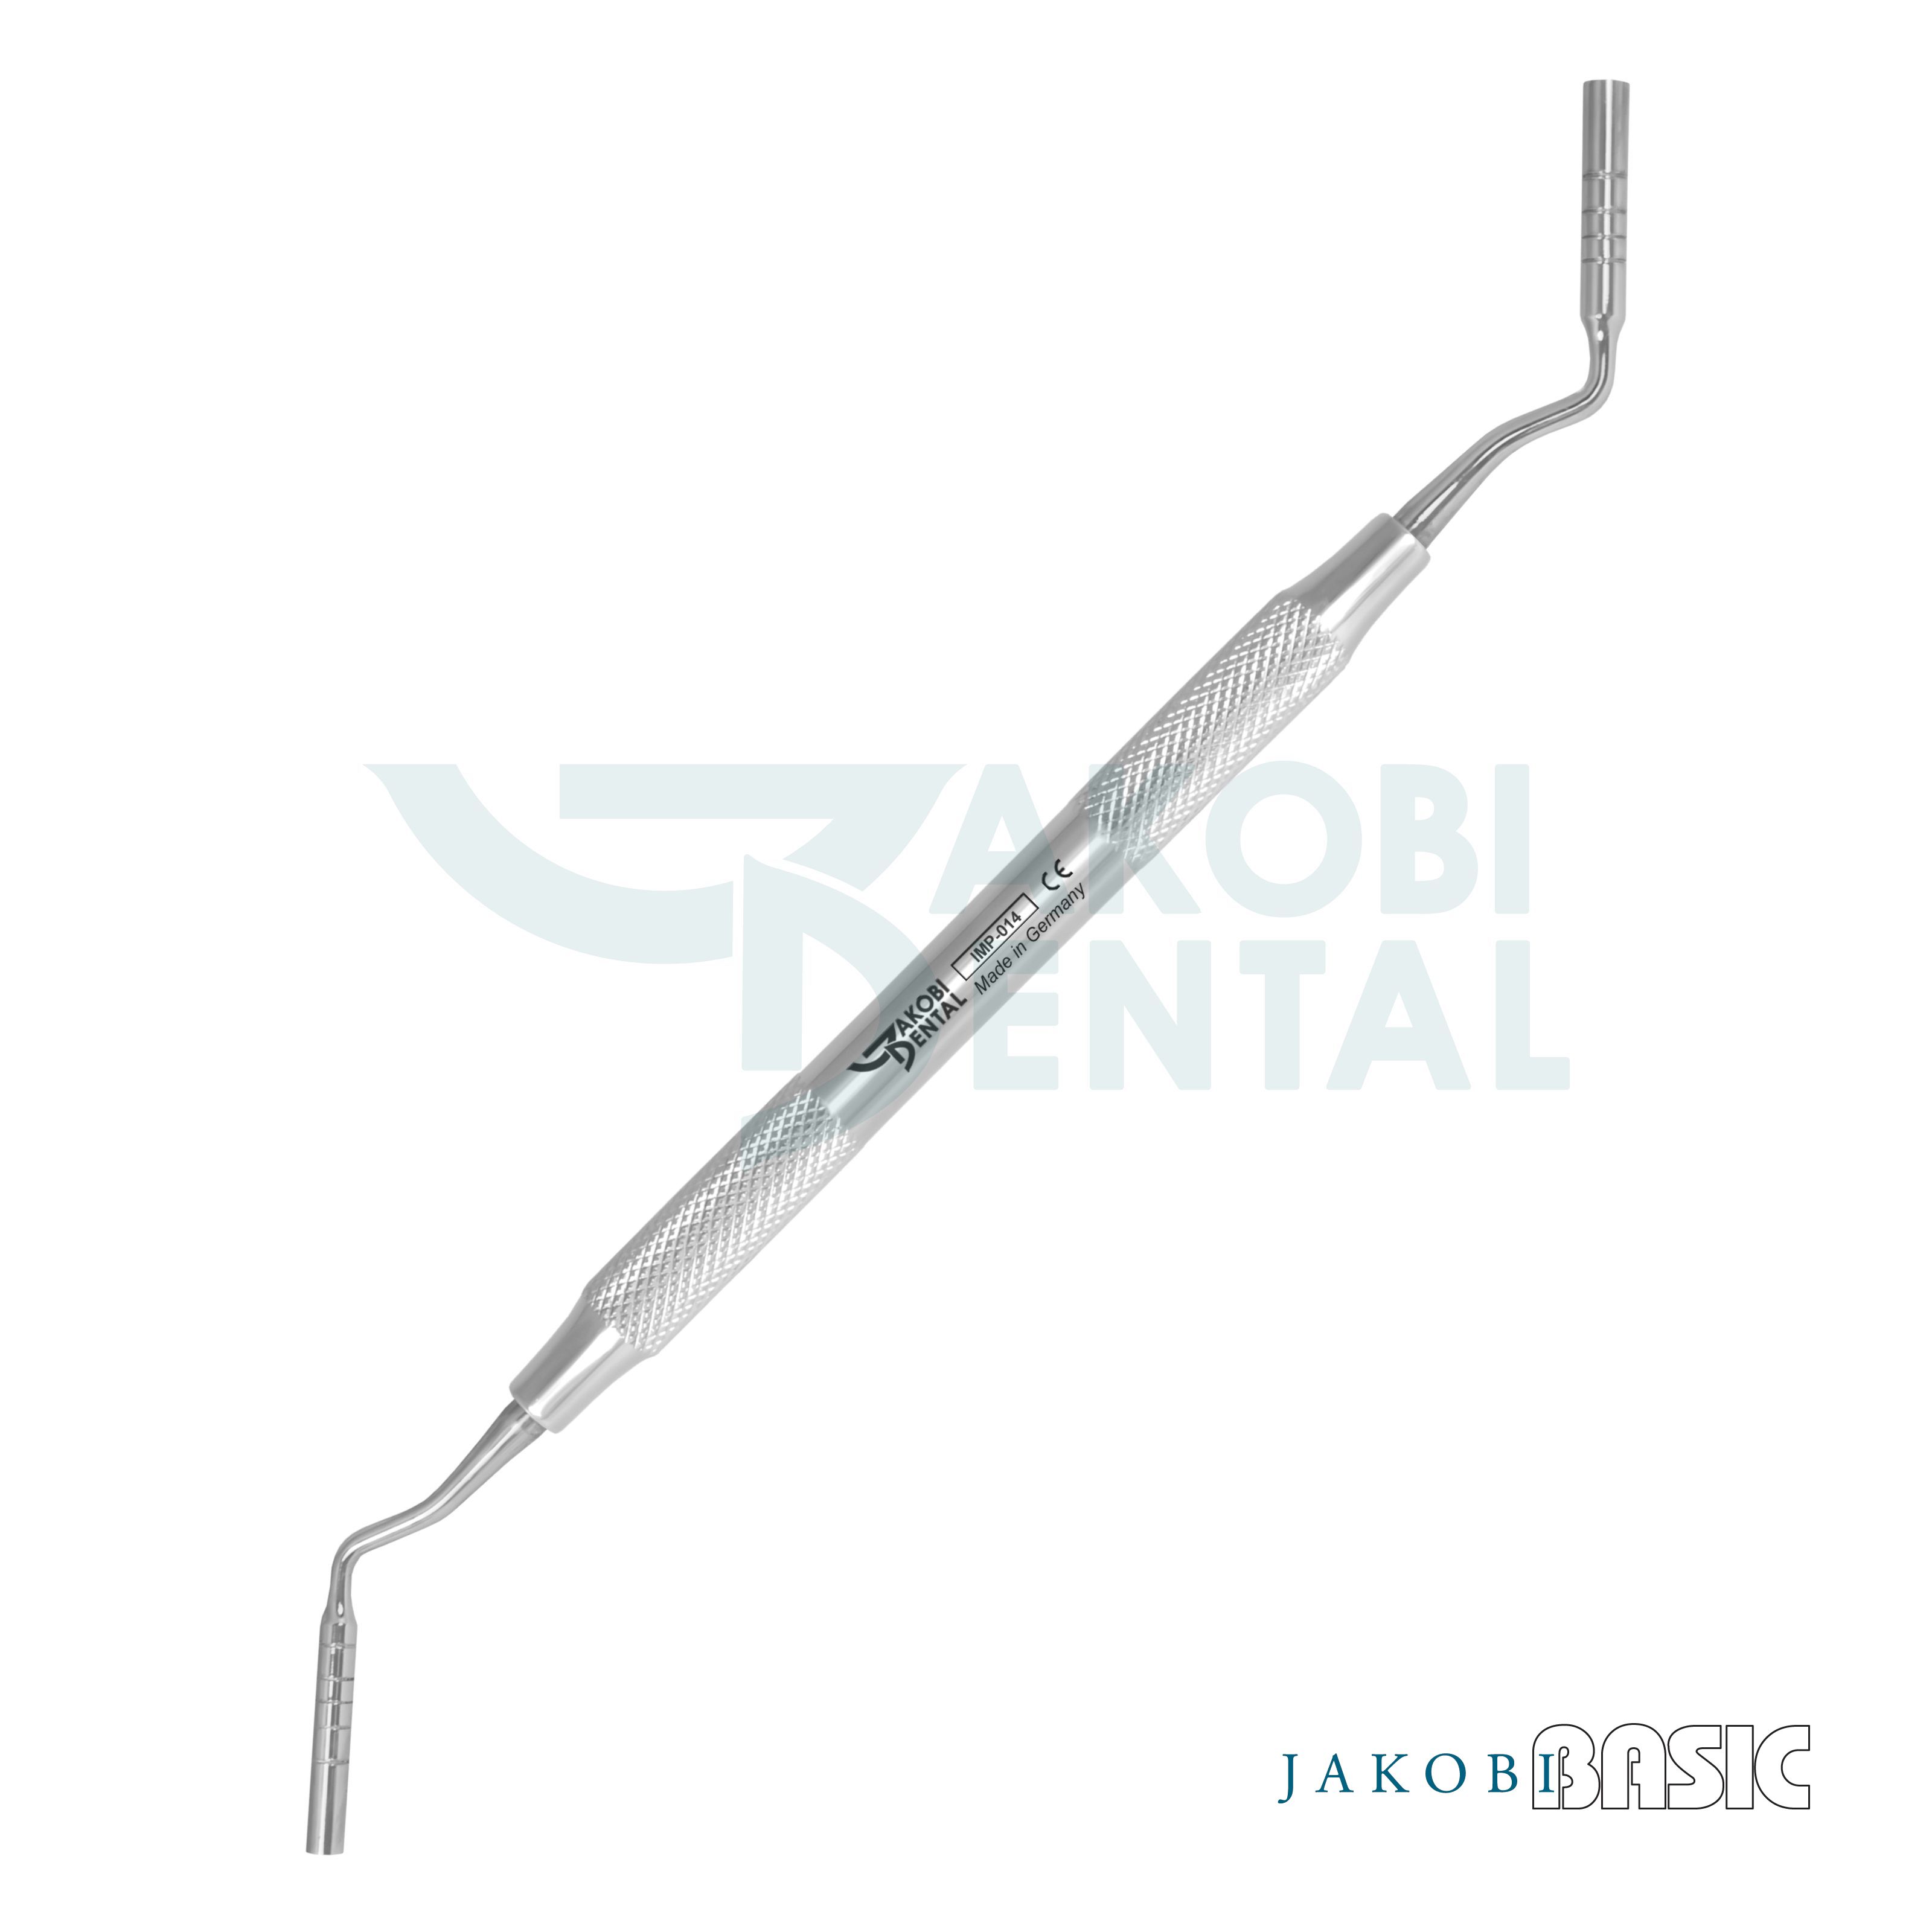 Implant. Stopfer, Ø 3.3/4.0mm, Tiefenmarkierungen, JakobiBasic Griff # 4